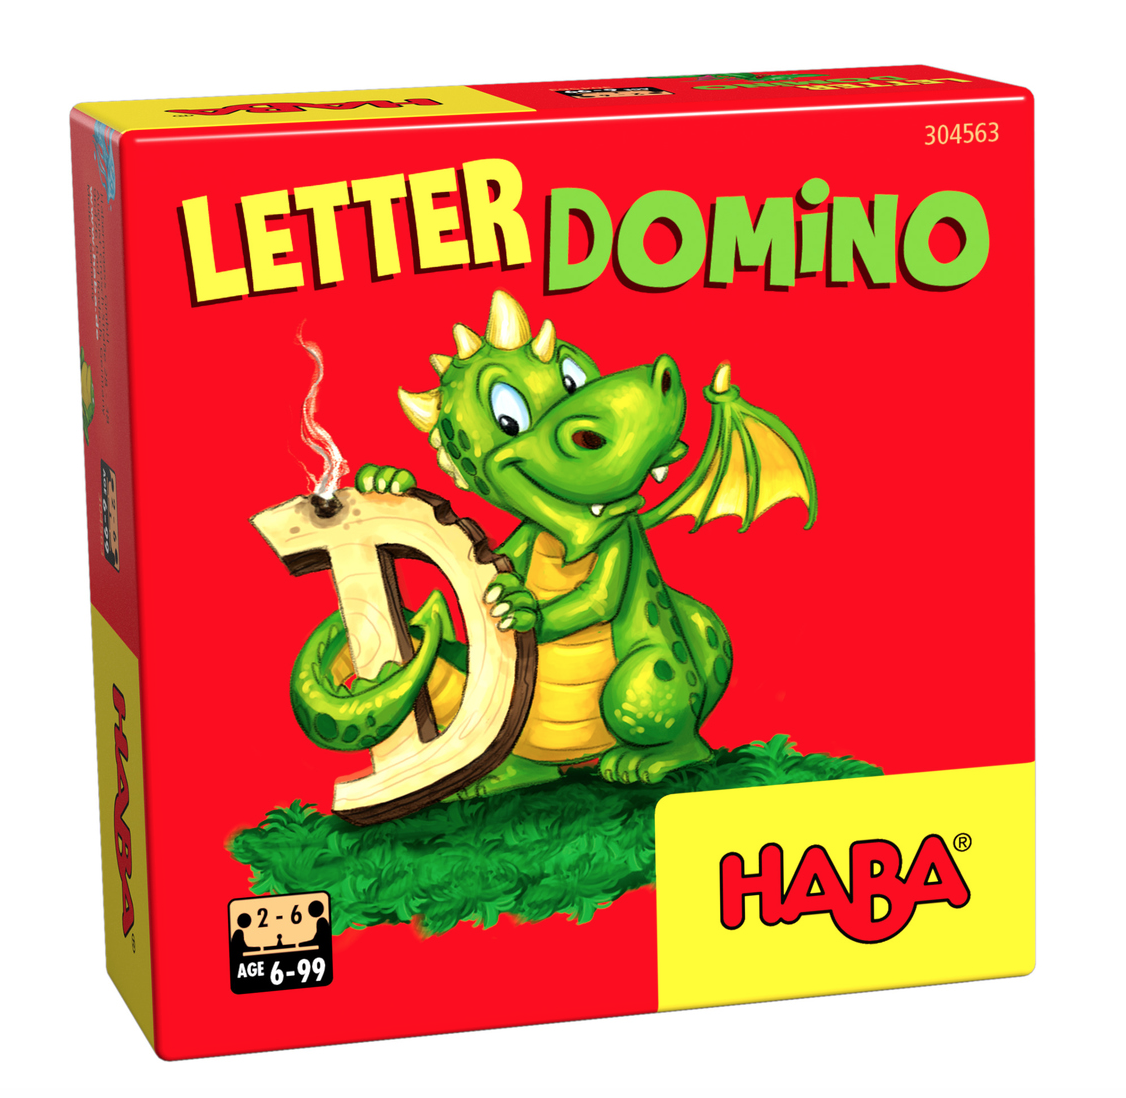 Letter domino mini